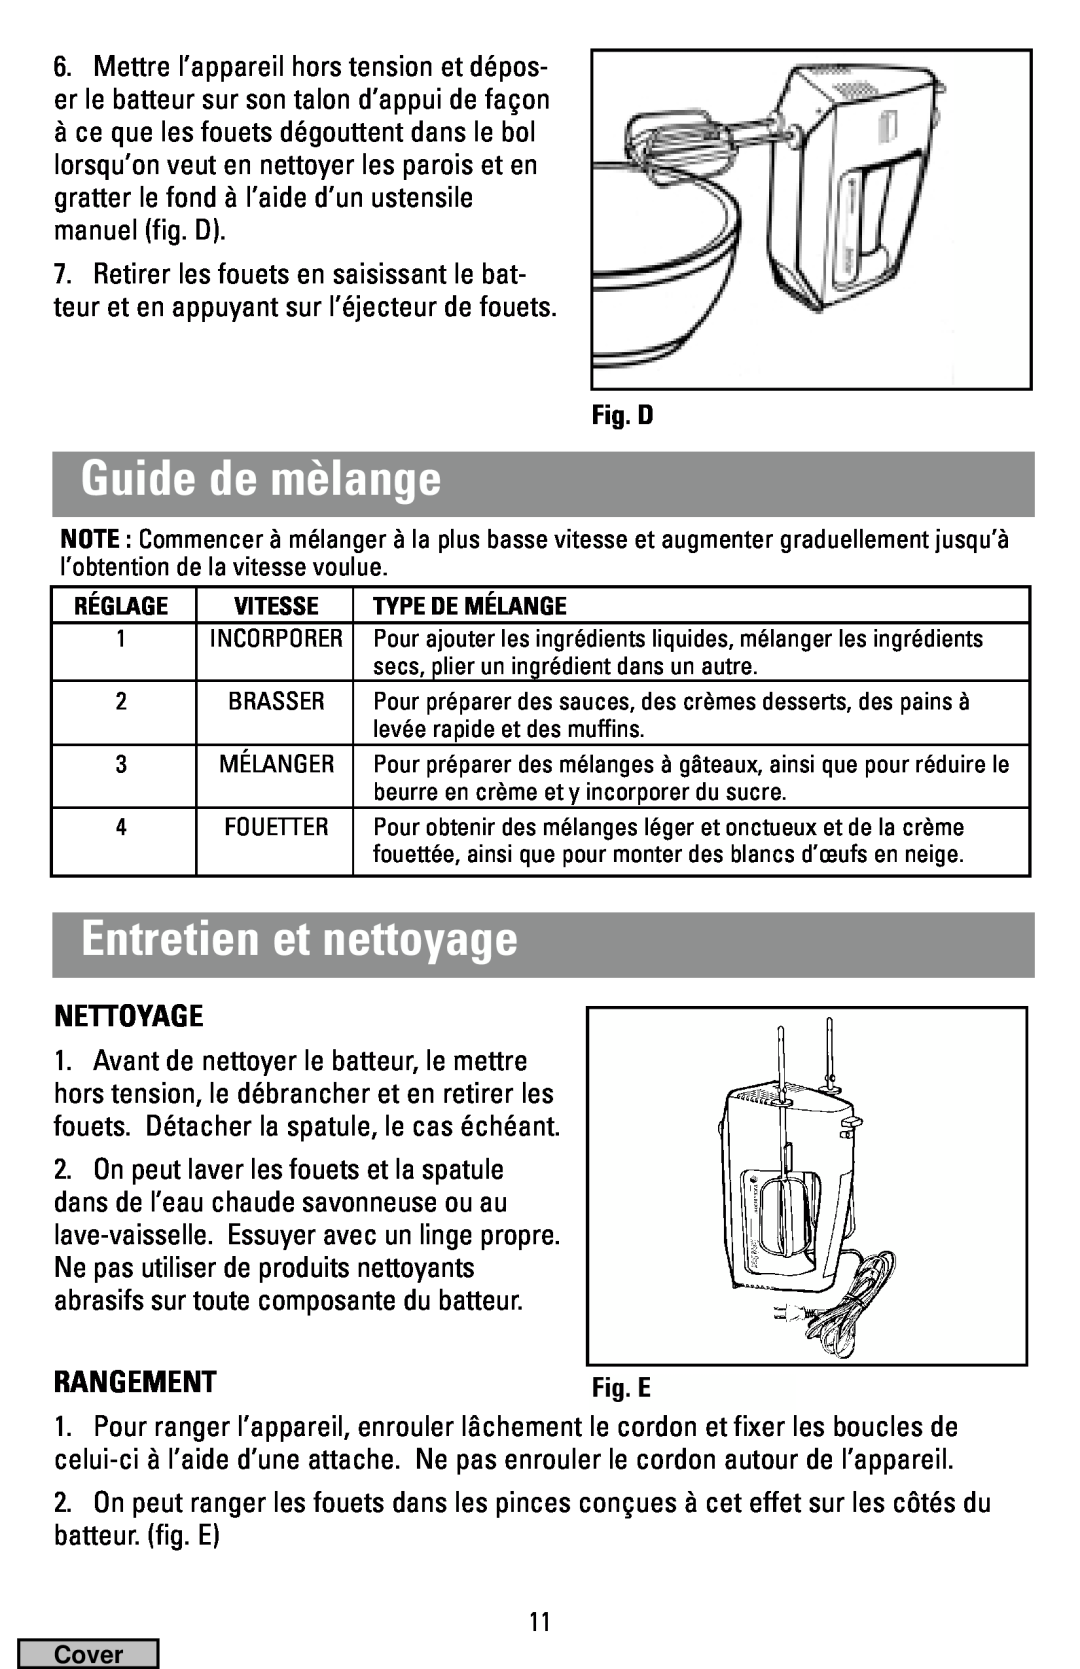 Black & Decker MX40 manual Guide de mèlange, Entretien et nettoyage, Nettoyage, Rangement, Fig. D 